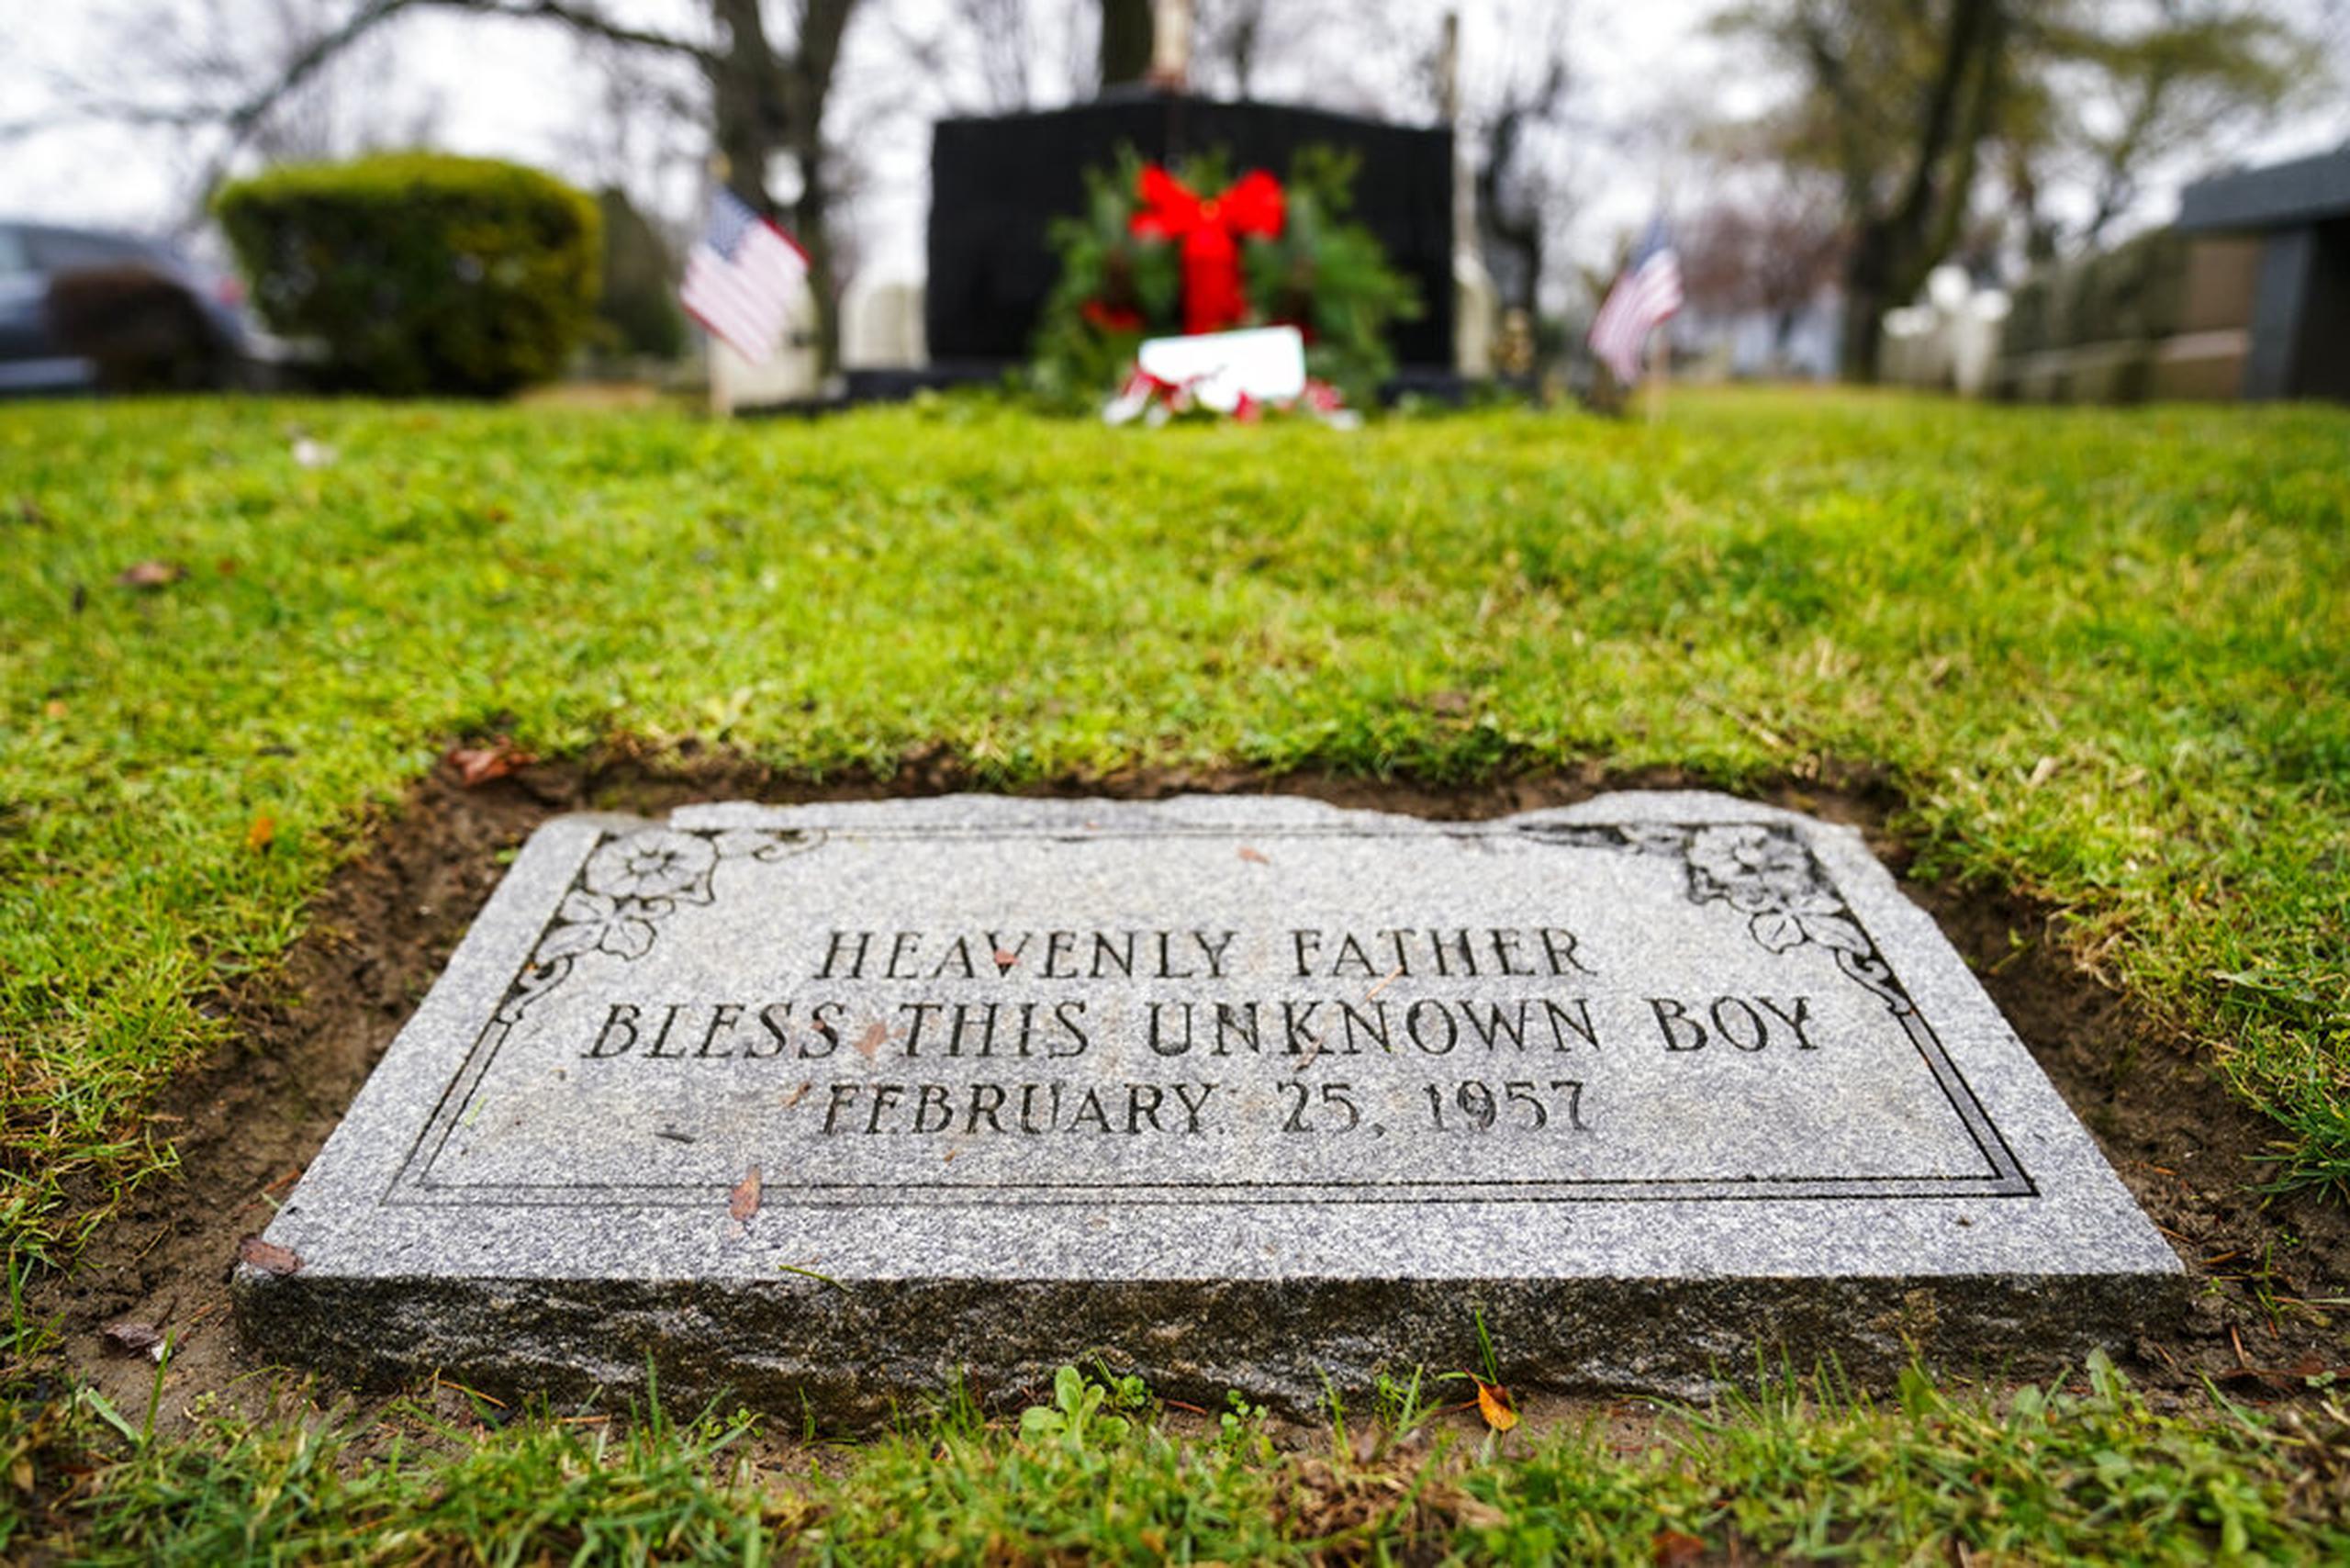 Originalmente enterrado en una tumba para indigentes, los restos del niño ahora yacen a la entrada del cementerio de Ivy Hill debajo de un cerezo llorón y una lápida lo designa como “El Niño Desconocido de Estados Unidos”.